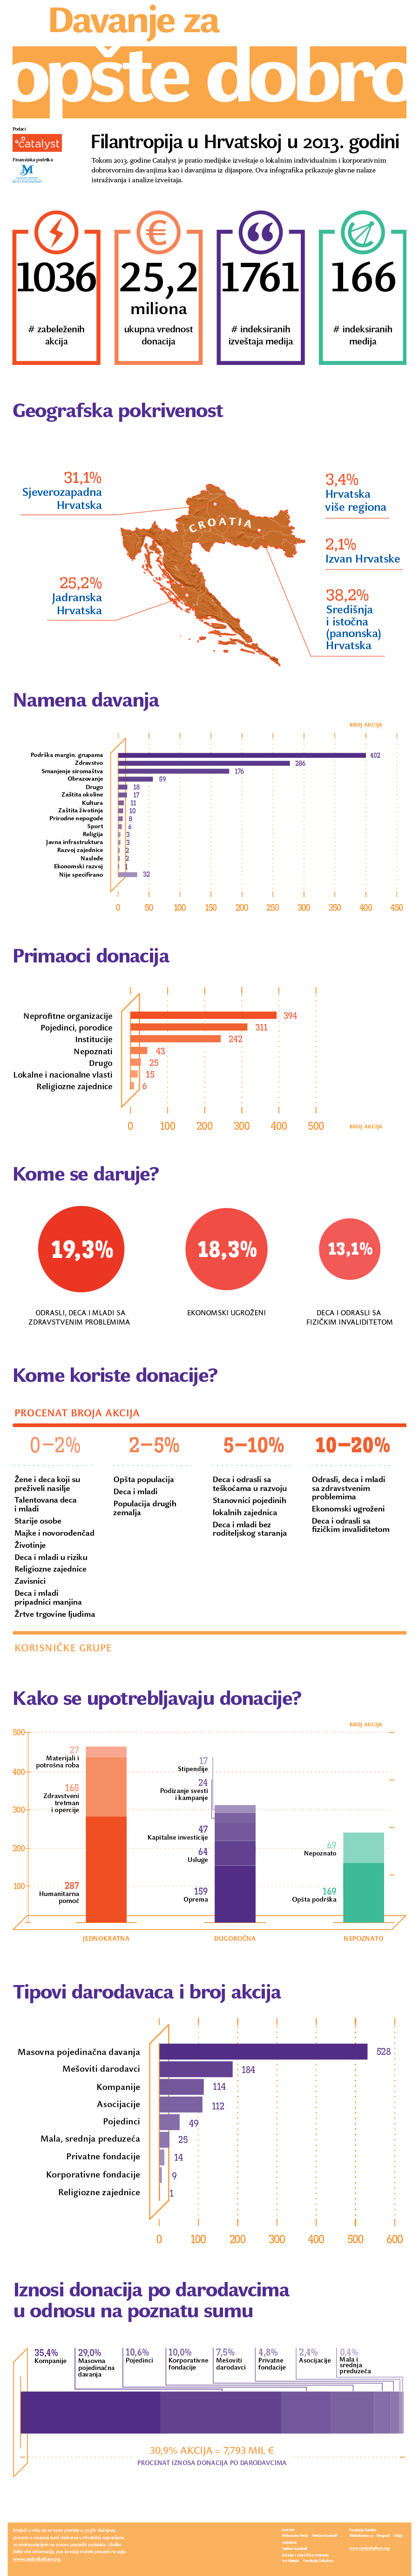 Infografik - Hrvatska - thumbnail